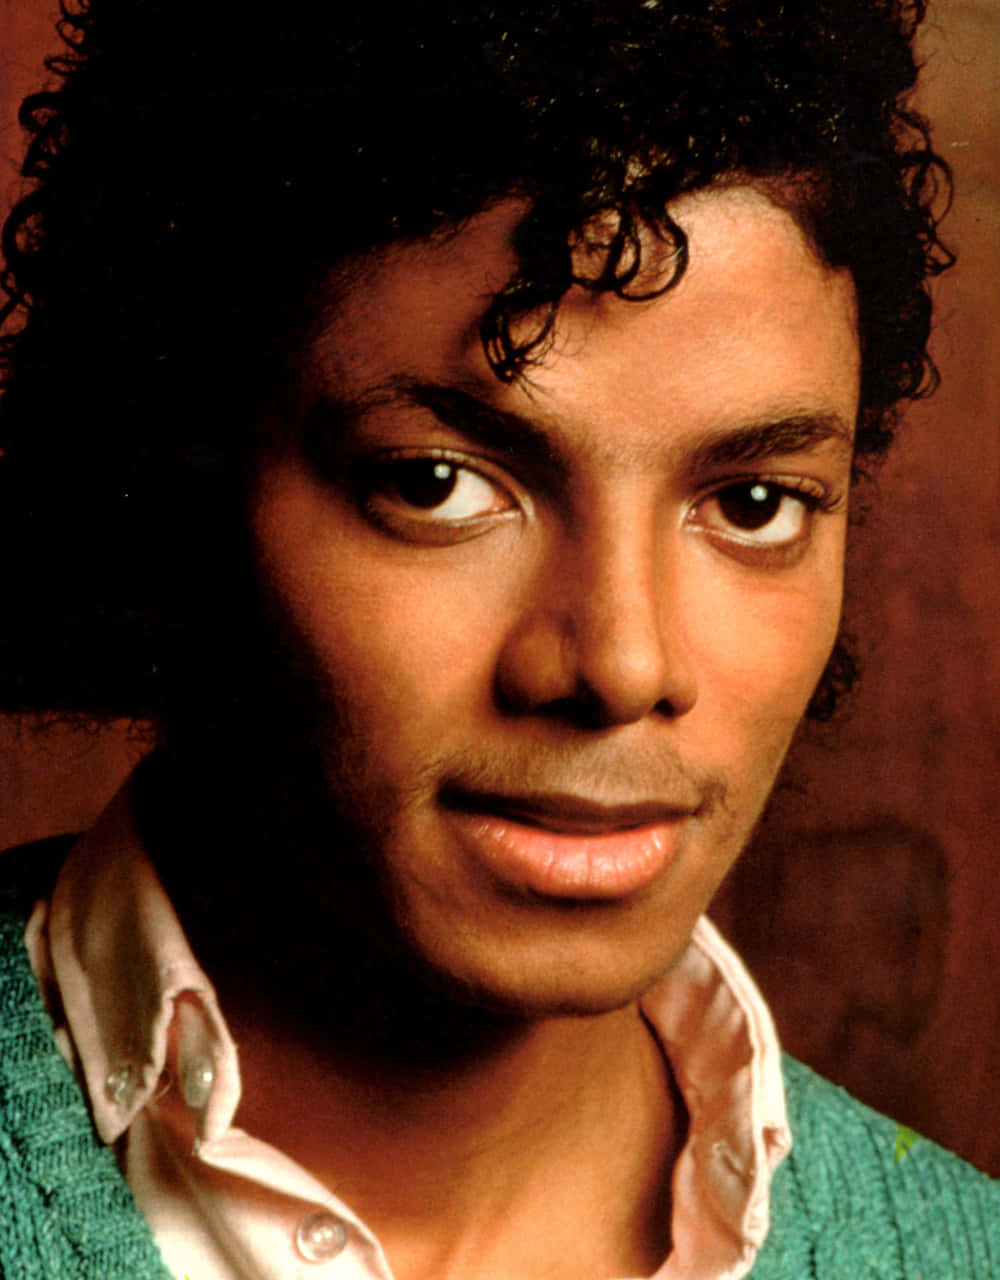 Billeder af Michael Jackson på dine vægge.